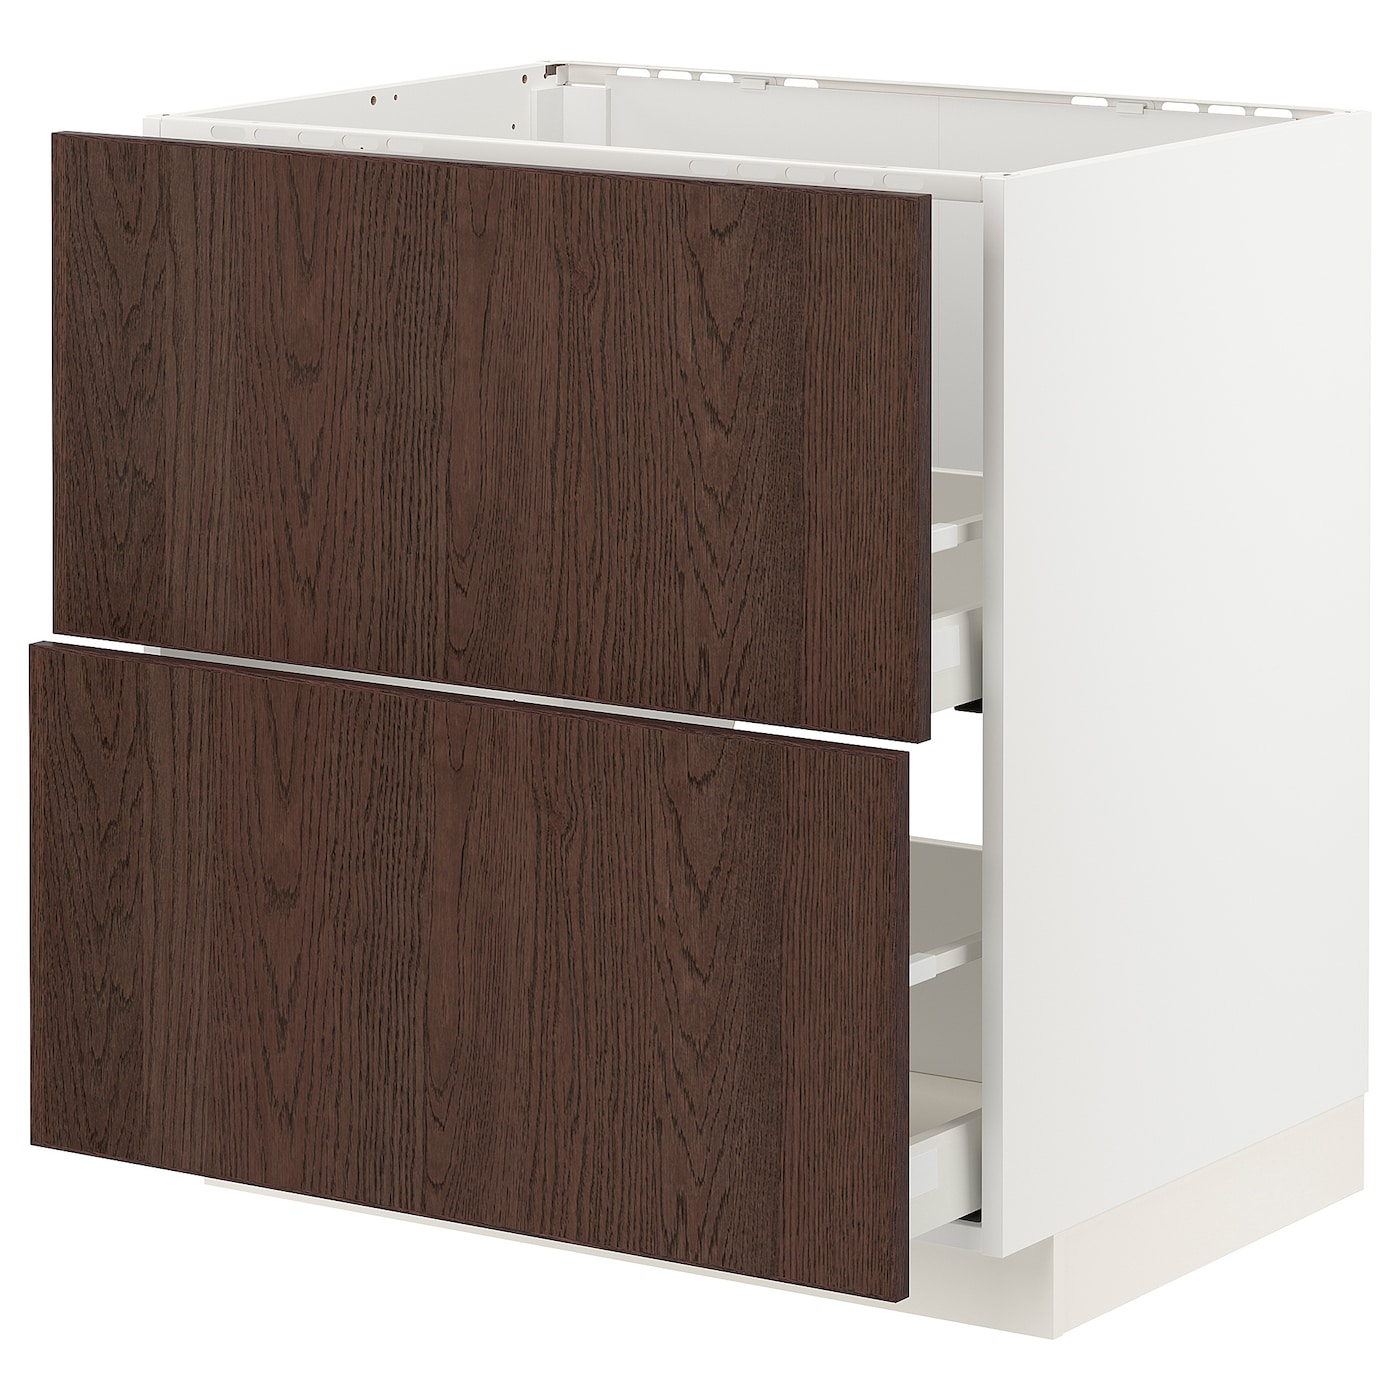 Напольный шкаф - IKEA METOD MAXIMERA, 88x62x80см, белый/коричневый, МЕТОД МАКСИМЕРА ИКЕА